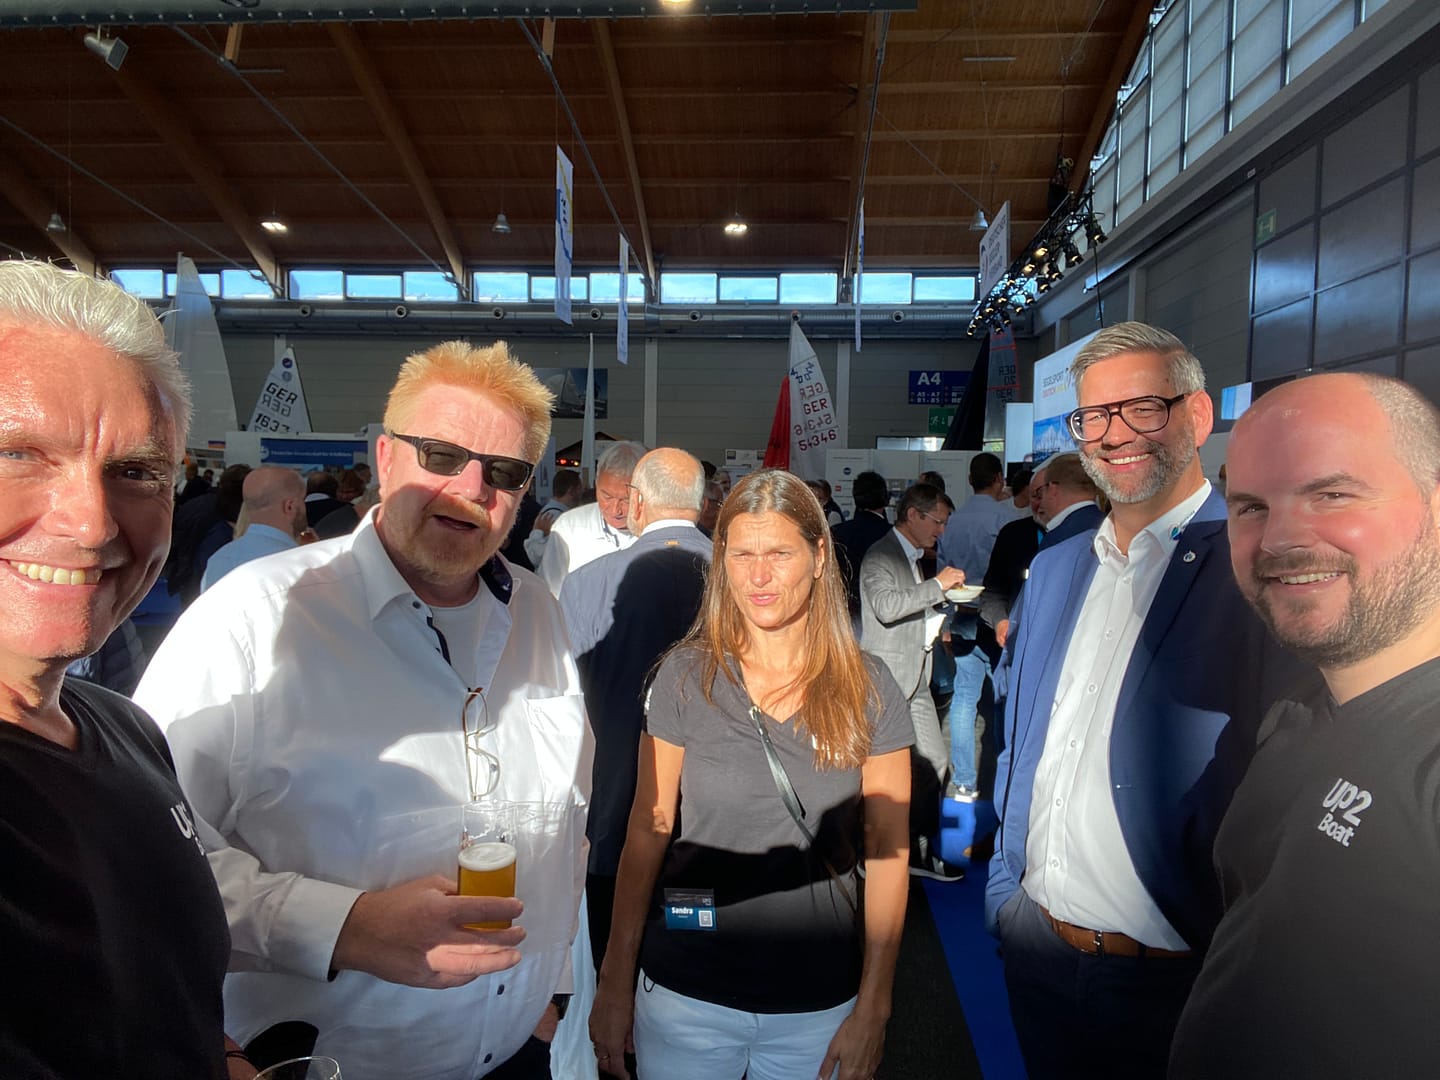 Das Präsidium des DMYV und die Geschäftsführung von Up2Boat freuen sich auf die gemeinsame Partnerschaft.
Von links nach rechts: Andreas Haberer (CEO Up2Boat), Frank Dettmering (DMYV), Sandra Haberer (COO Up2Boat), Achim Harks (Geschäftsführer DMYV), Thilo Weihsbach (CIO Up2Boat)